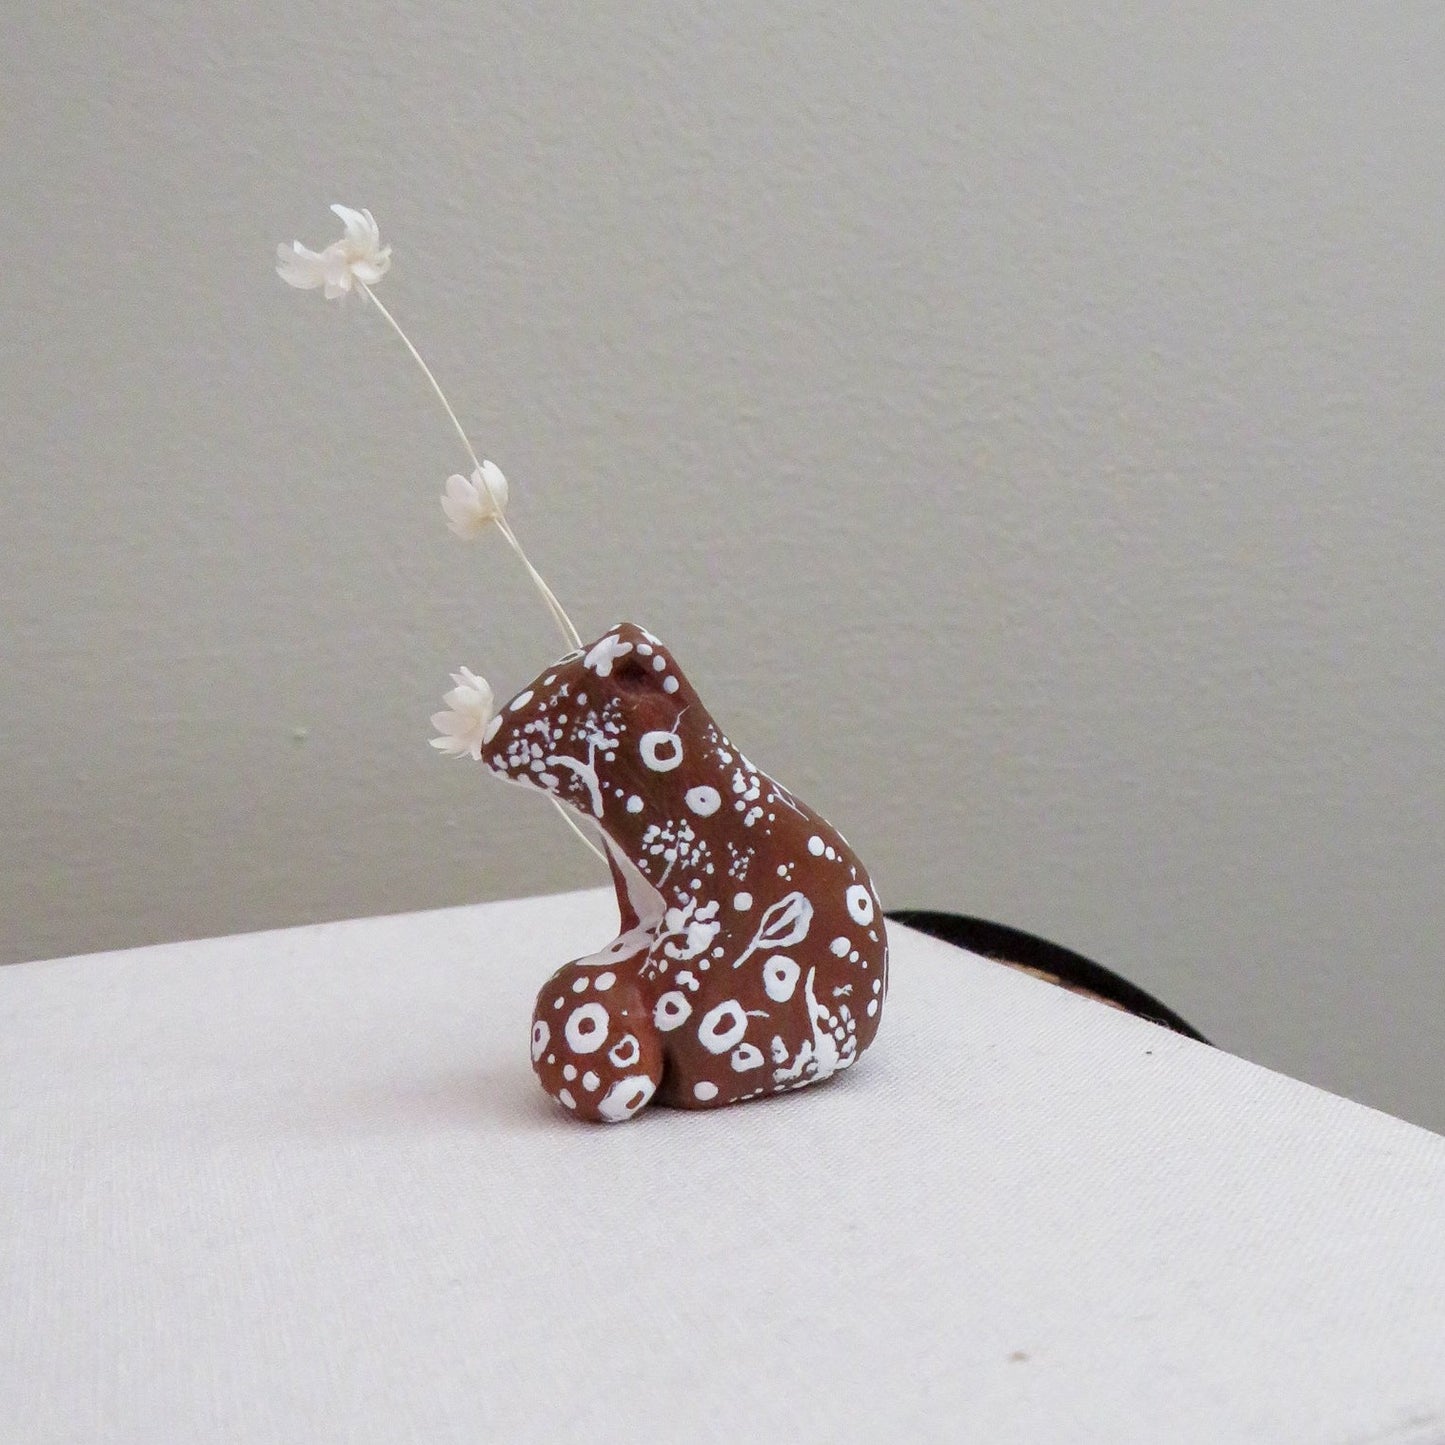 Little squirrel sculpture